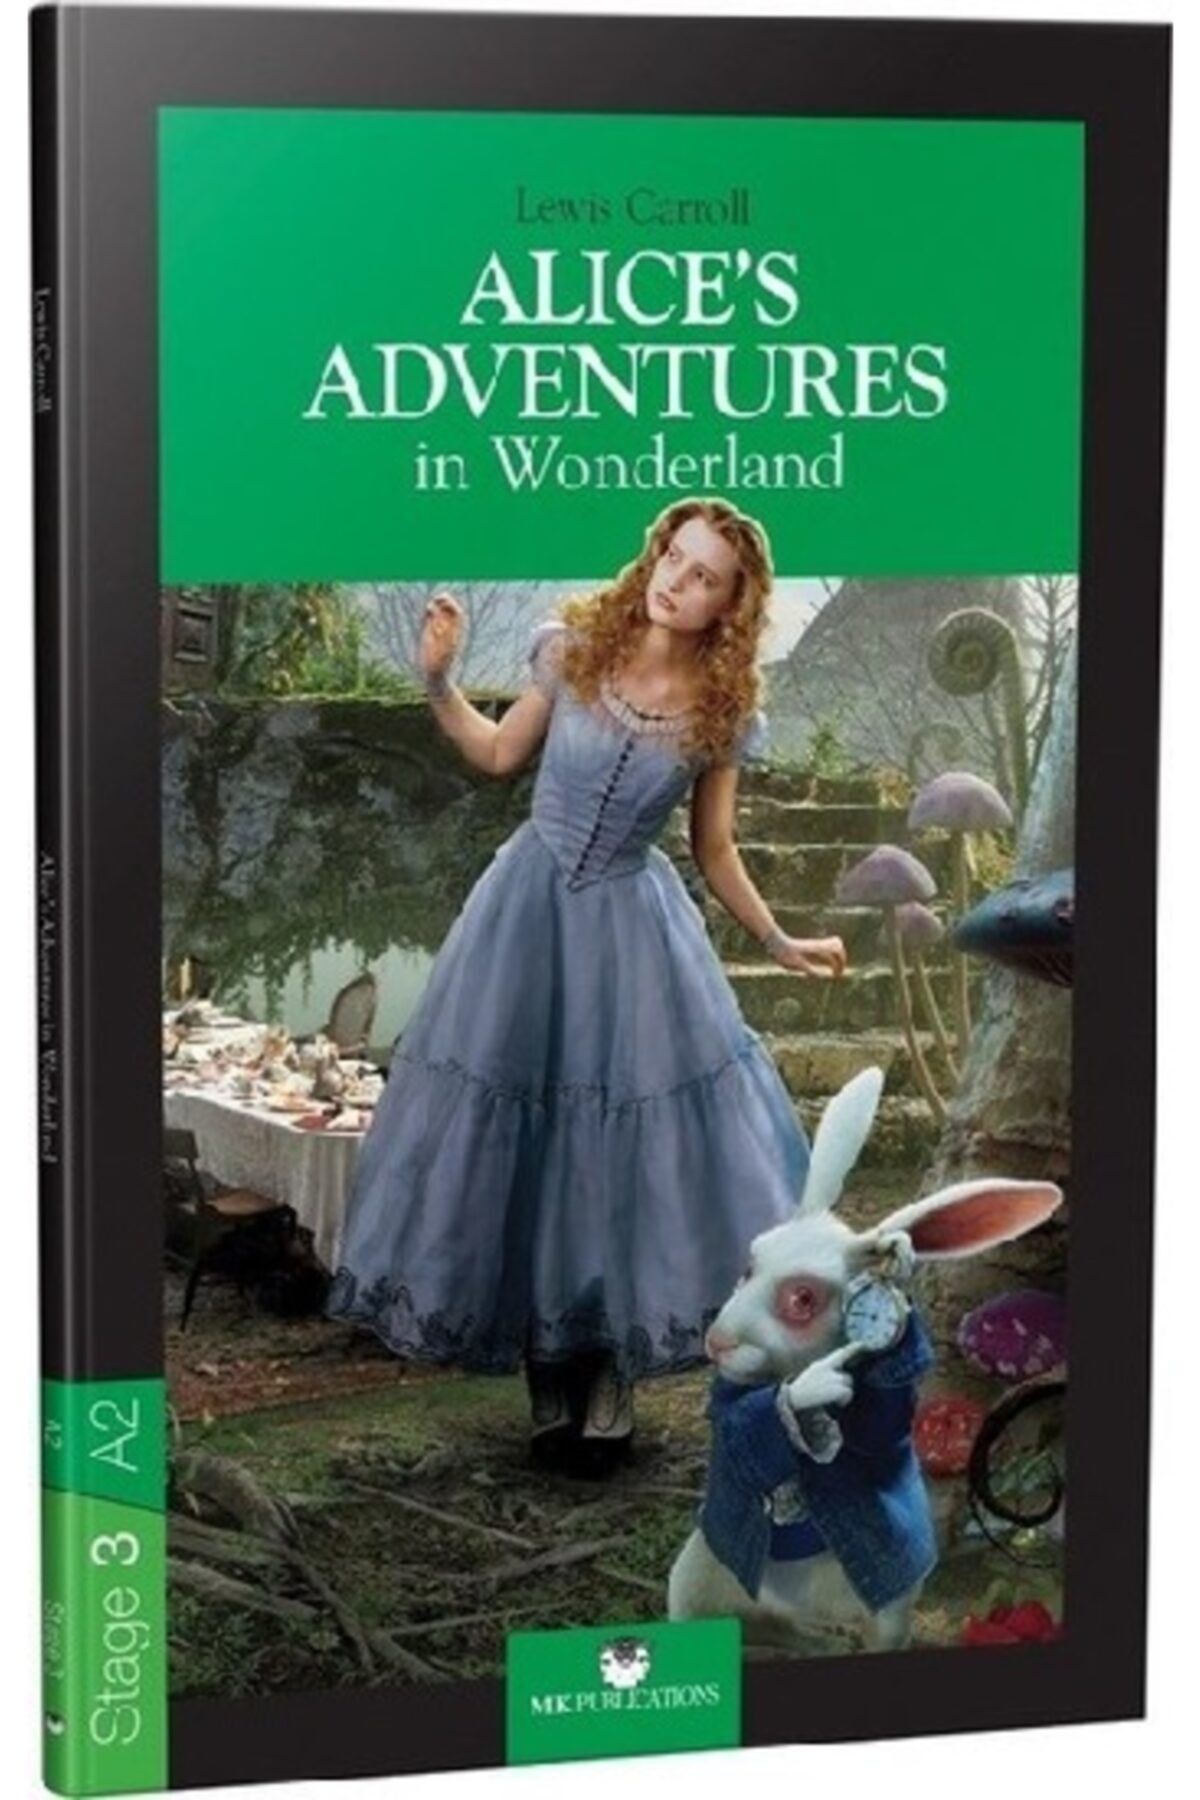 Алиса в стране чудес сколько глав. Кэрролл "Алиса в стране чудес". Алиса в стране чудес Льюис Кэрролл книга. Алиса в стране чудес издания. Алиса в стране чудес читательский дневник.